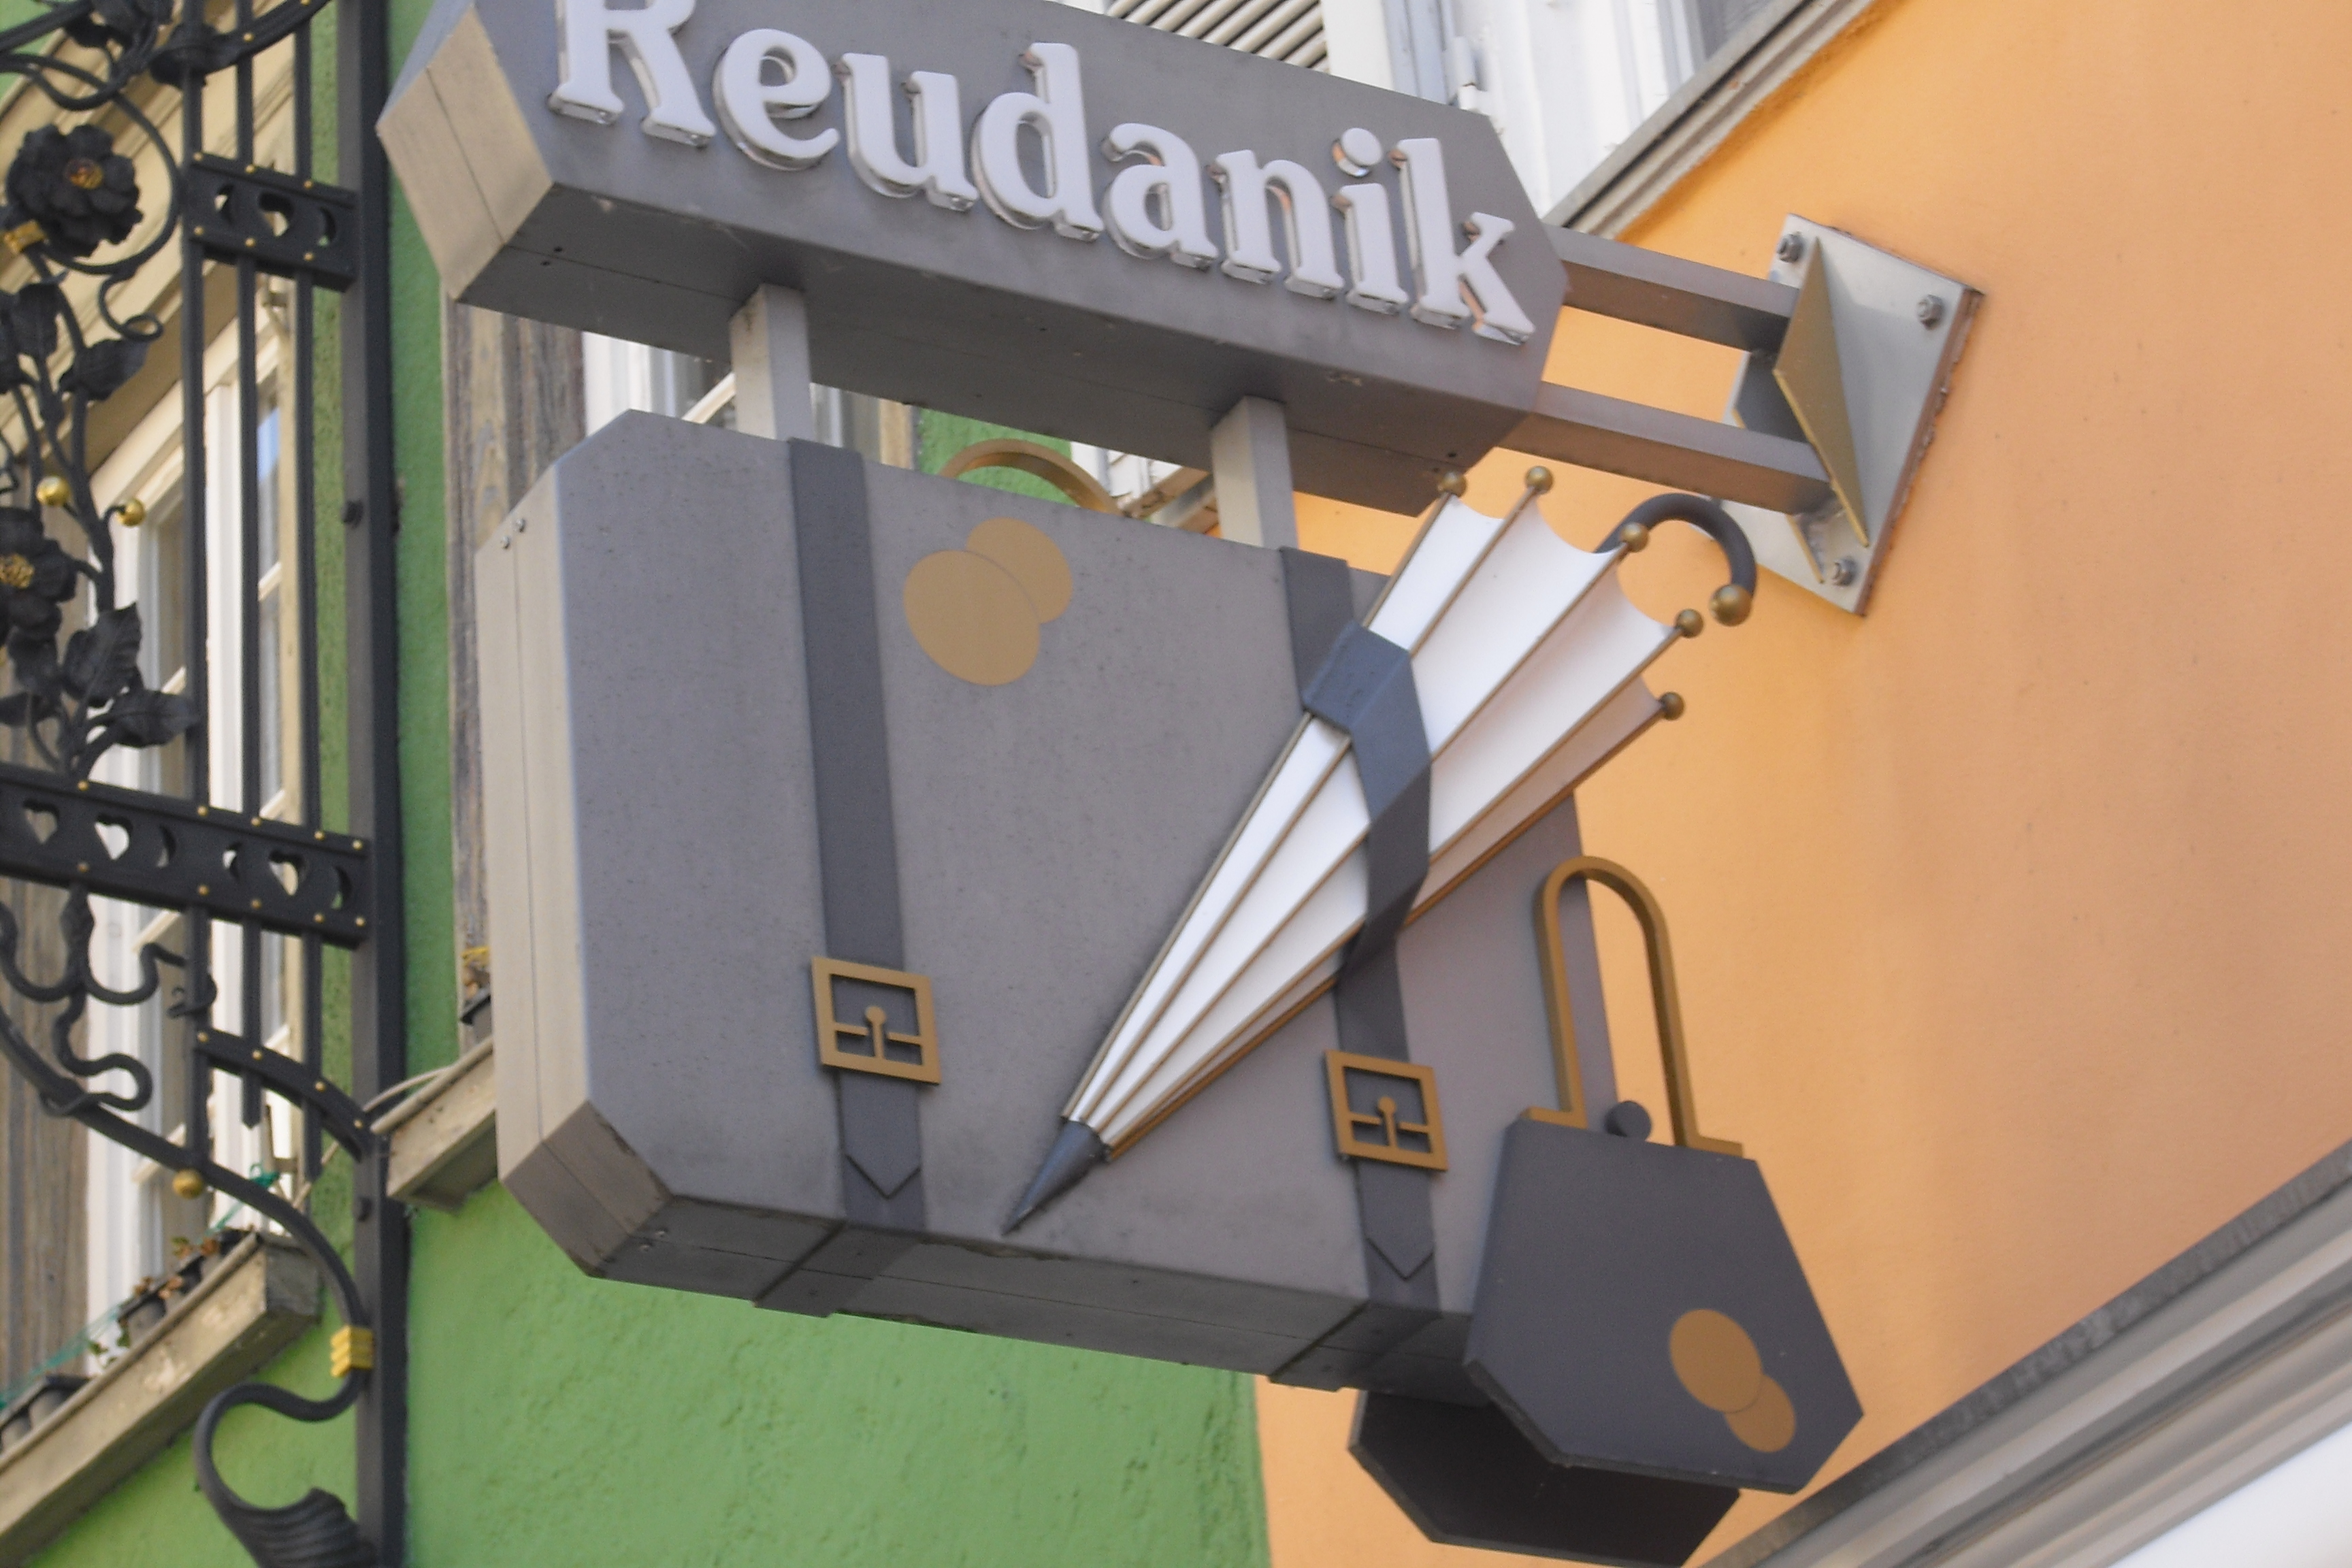 Bild 2 Reudanik Lederwaren in Rottenburg am Neckar